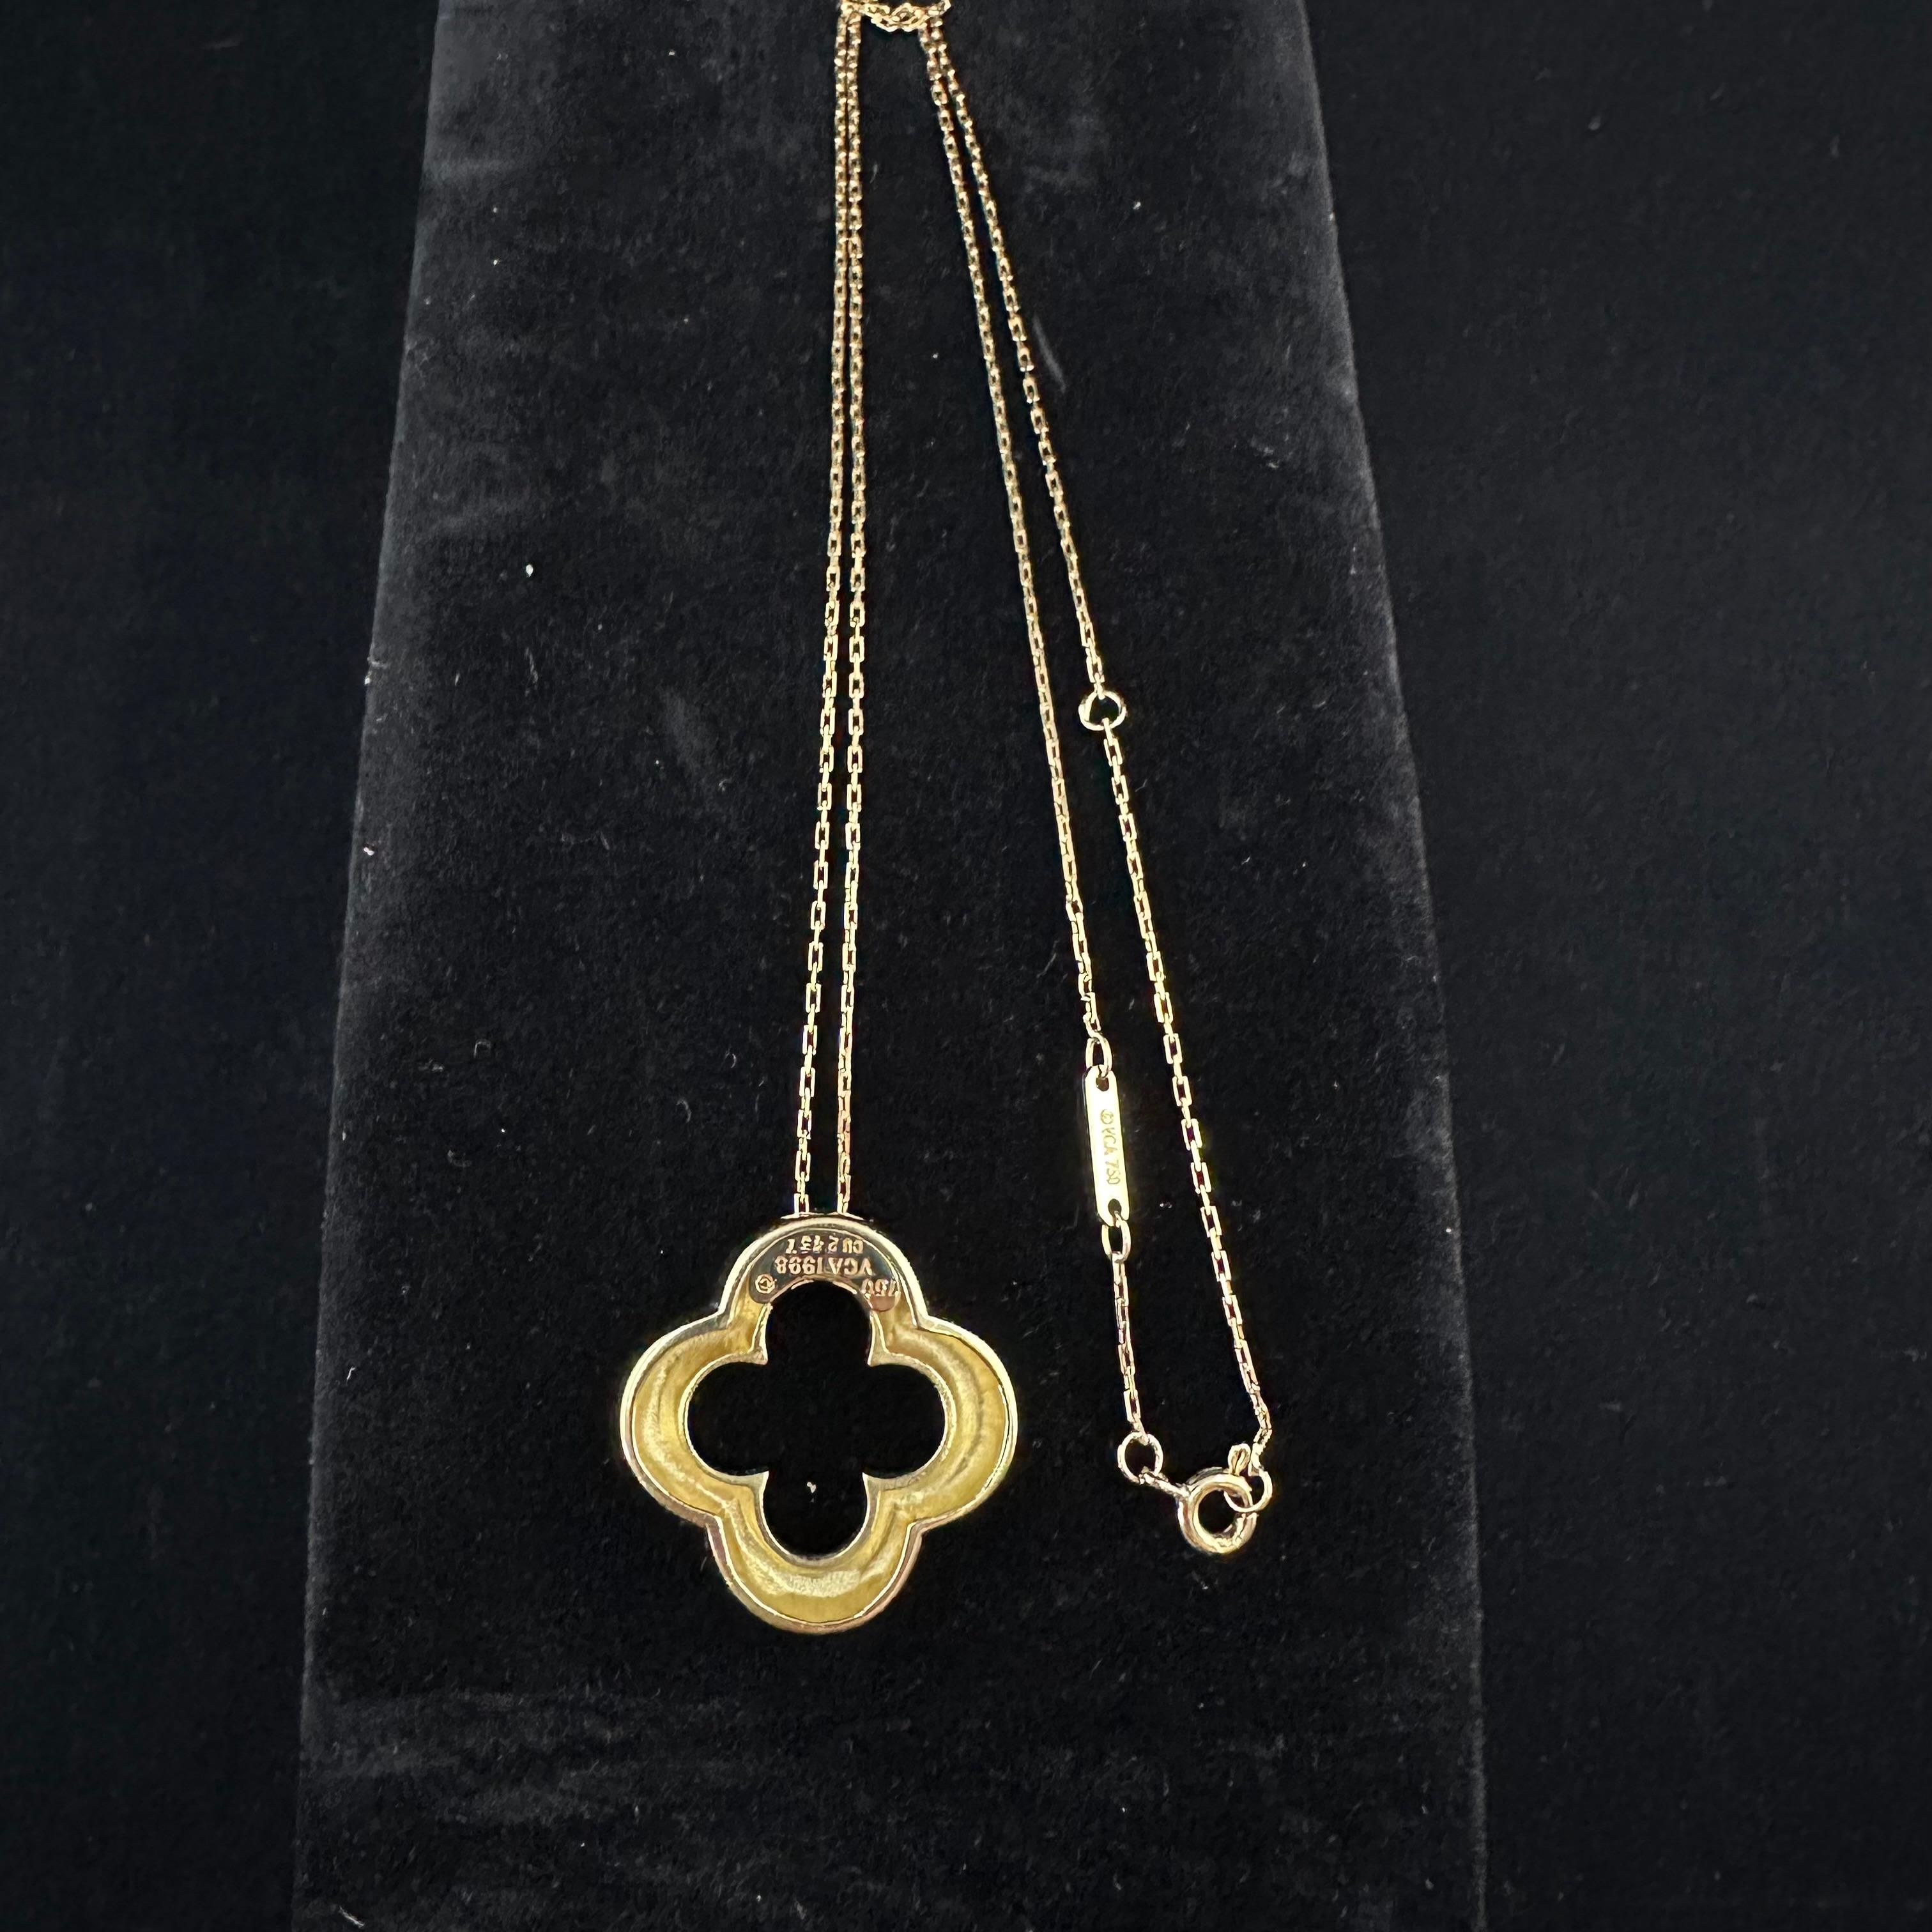 Women's or Men's Van Cleef & Arpels Yellow Gold Alhambra Pendant Necklace 18k 